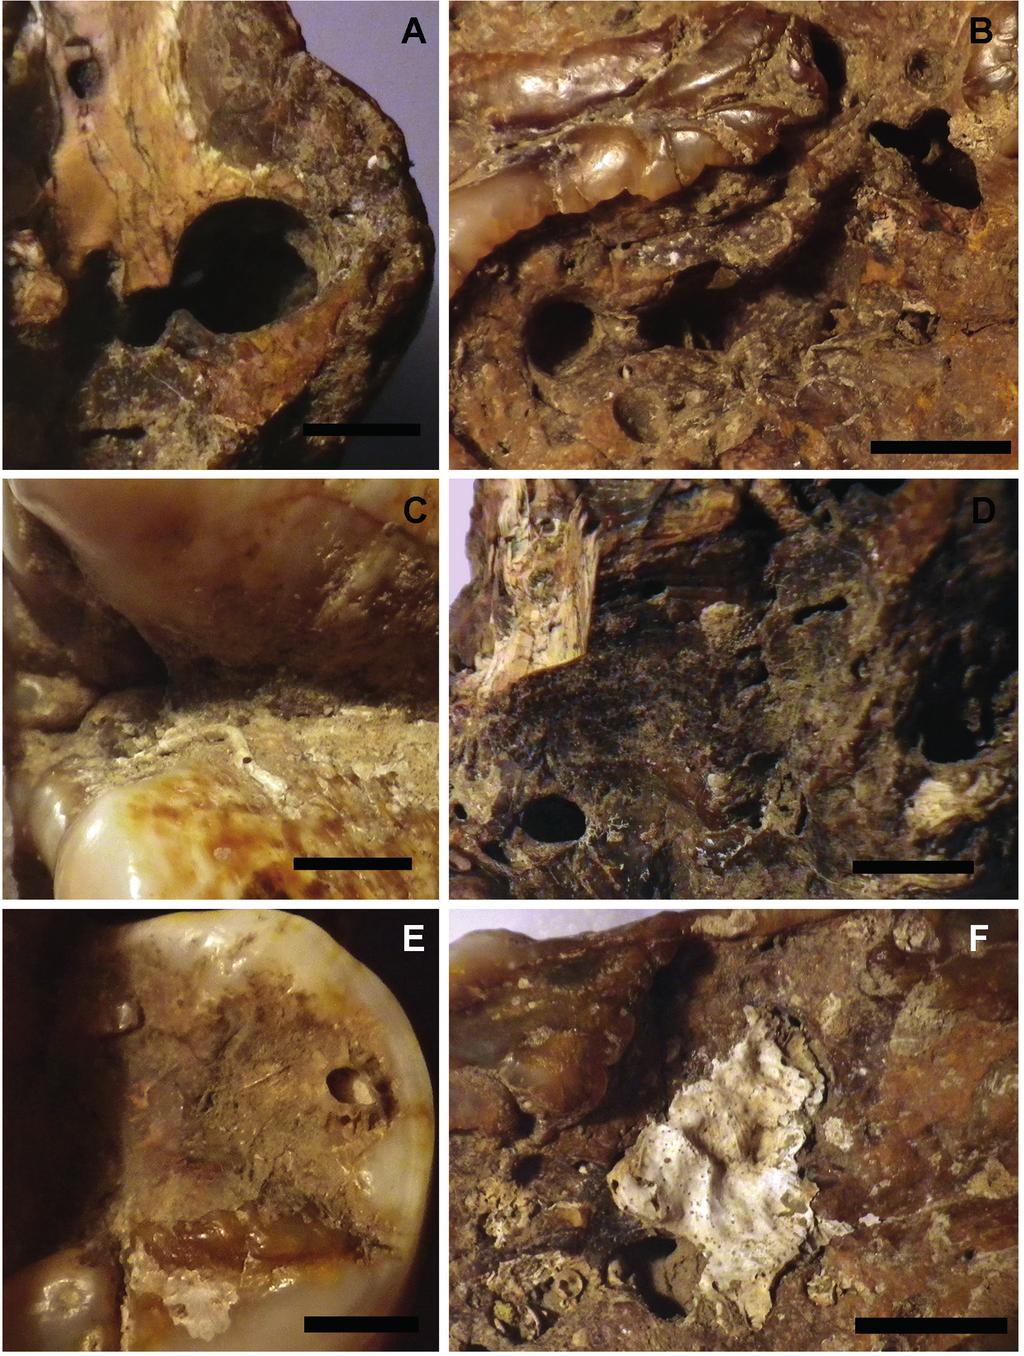 LAURITO ET AL.: El mastodonte bajo el agua... 141 Fig. 4: Trazas de bioturbación tipo Gastrochaenolites en la porción ósea de la raíz en a. y d., y en la dentina de la zona oclusal en b.